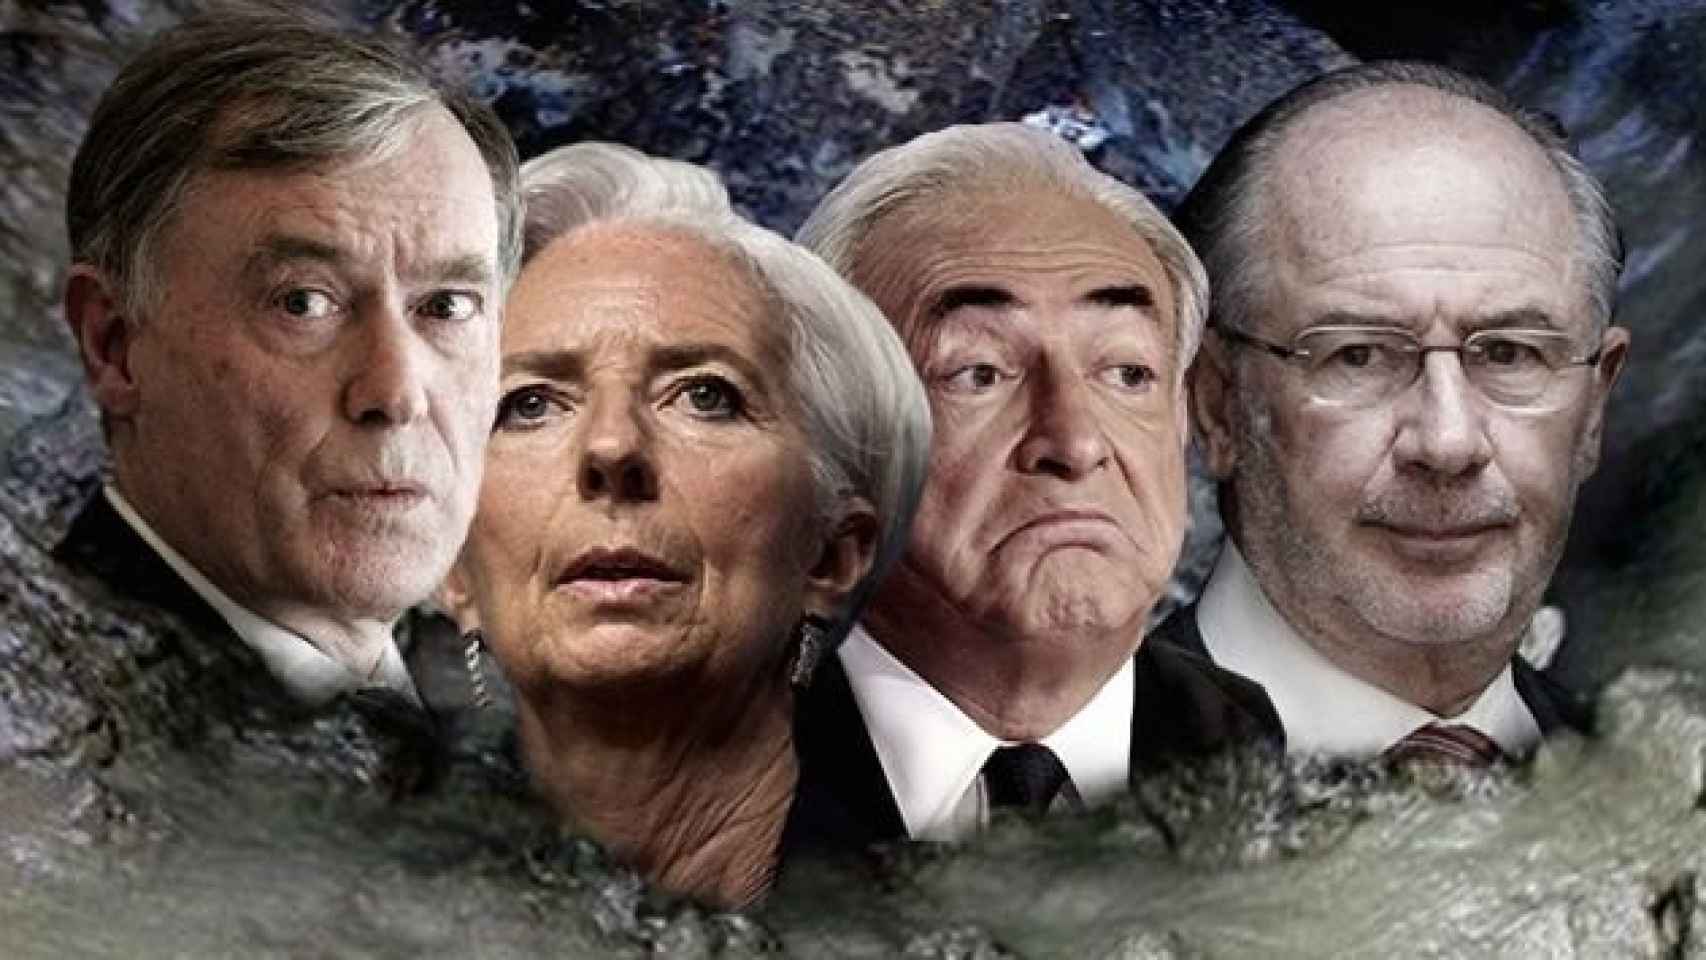 Cuatro de los últimos presidentes del Fondo Monetario Internacional (FMI), Horst Köhler, Cristine Lagarde, Dominique Strauss-Khan y Rodrigo Rato.